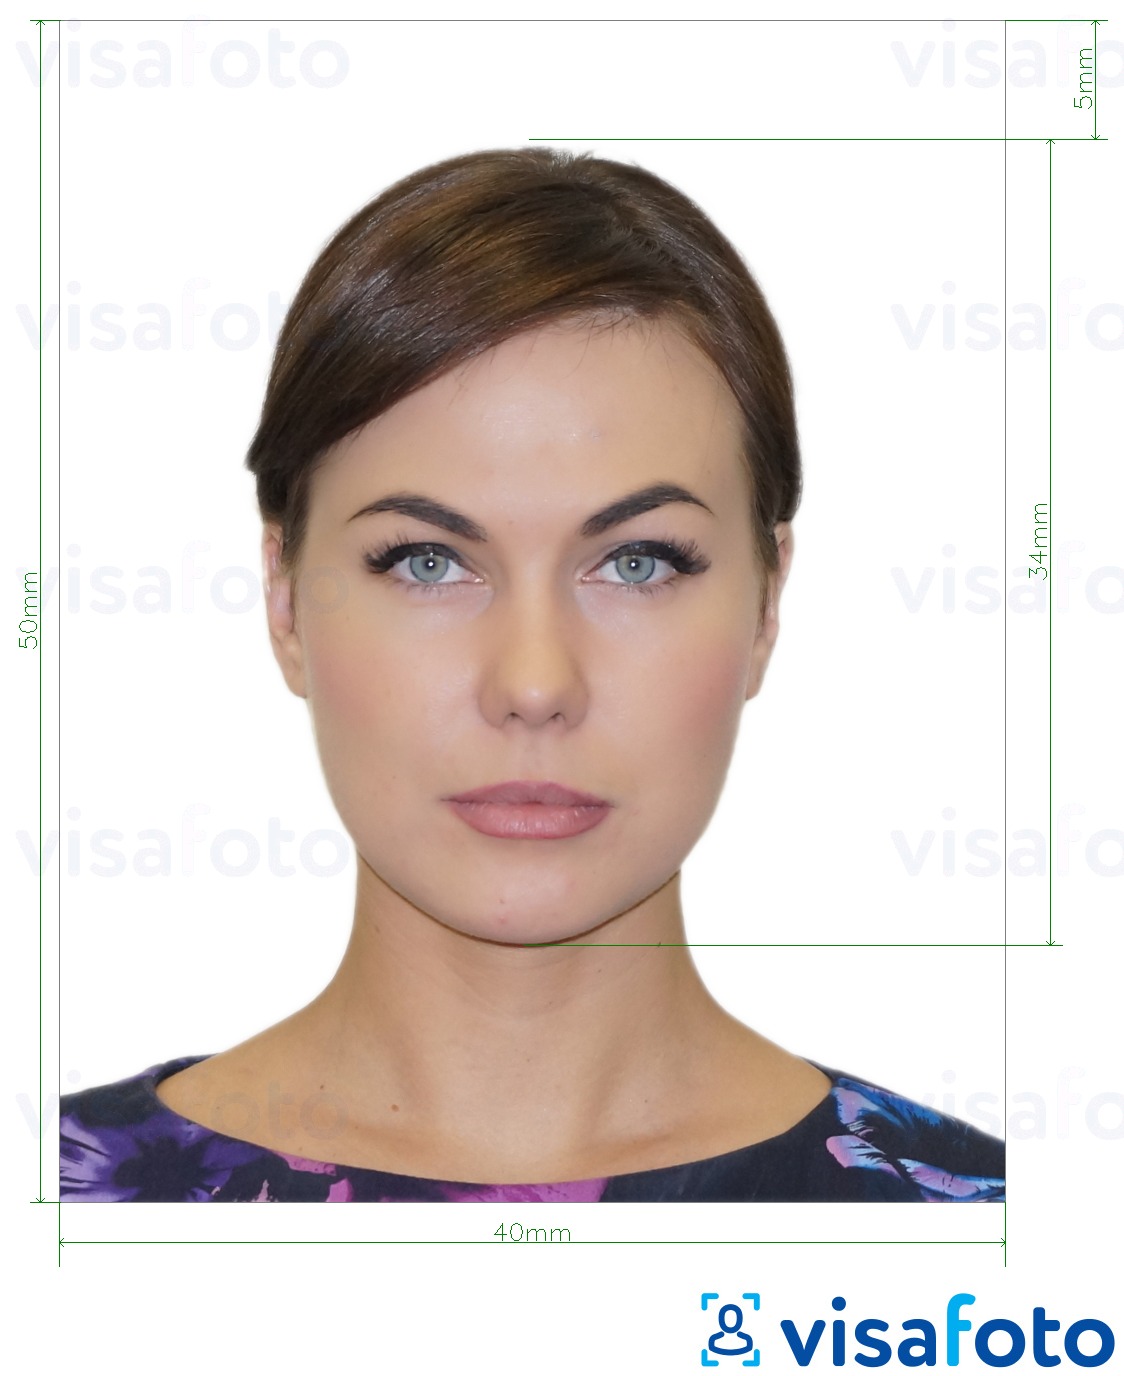  Albaania e-viisa 4x5 cm fotonäidis koos täpse infoga mõõtude kohta.